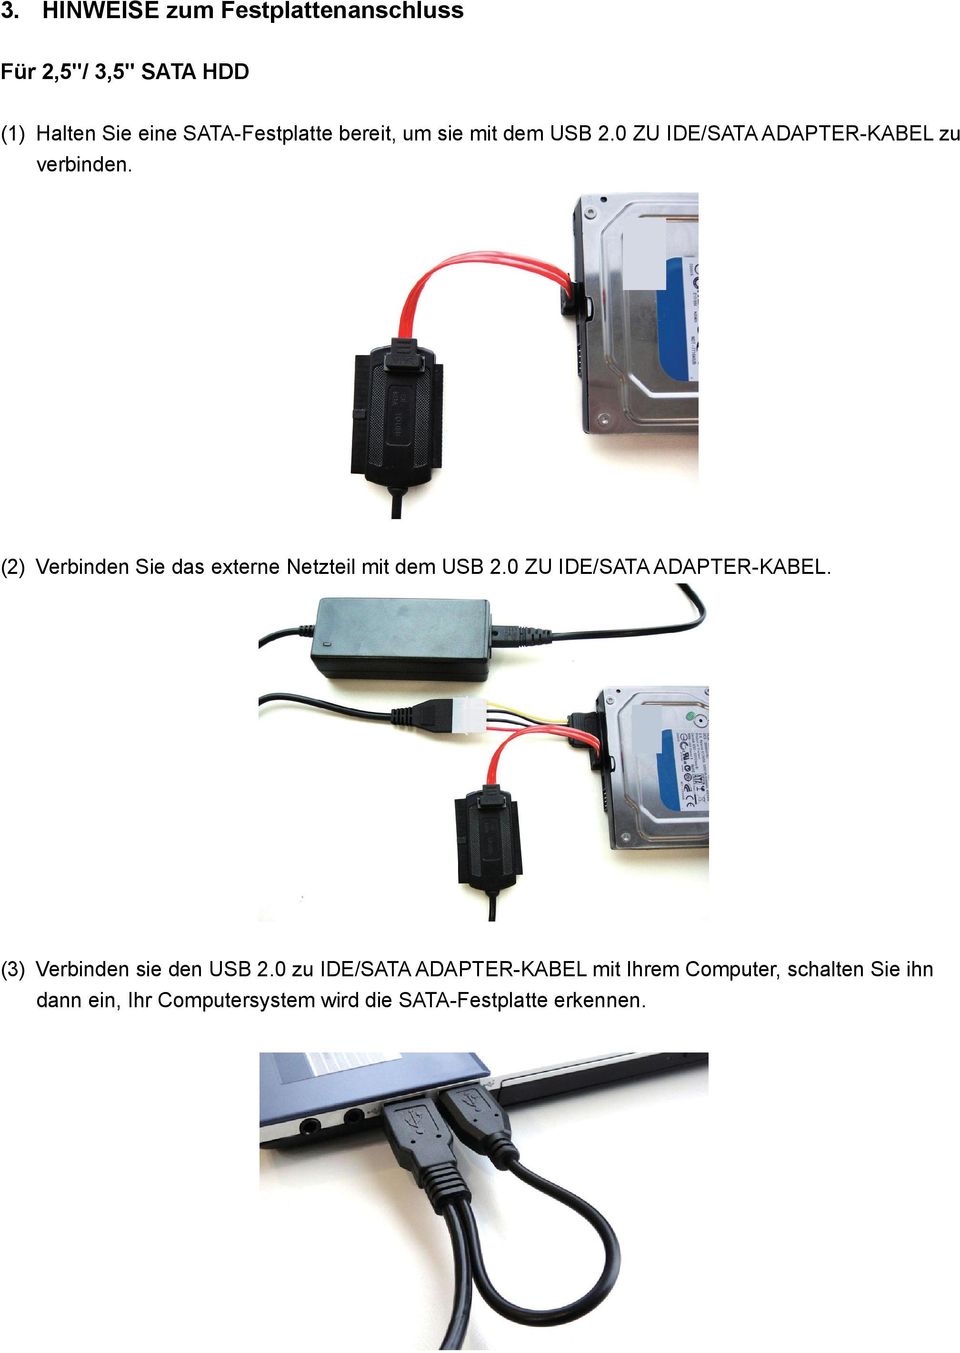 (2) Verbinden Sie das externe Netzteil mit dem USB 2.0 ZU IDE/SATA ADAPTER-KABEL.